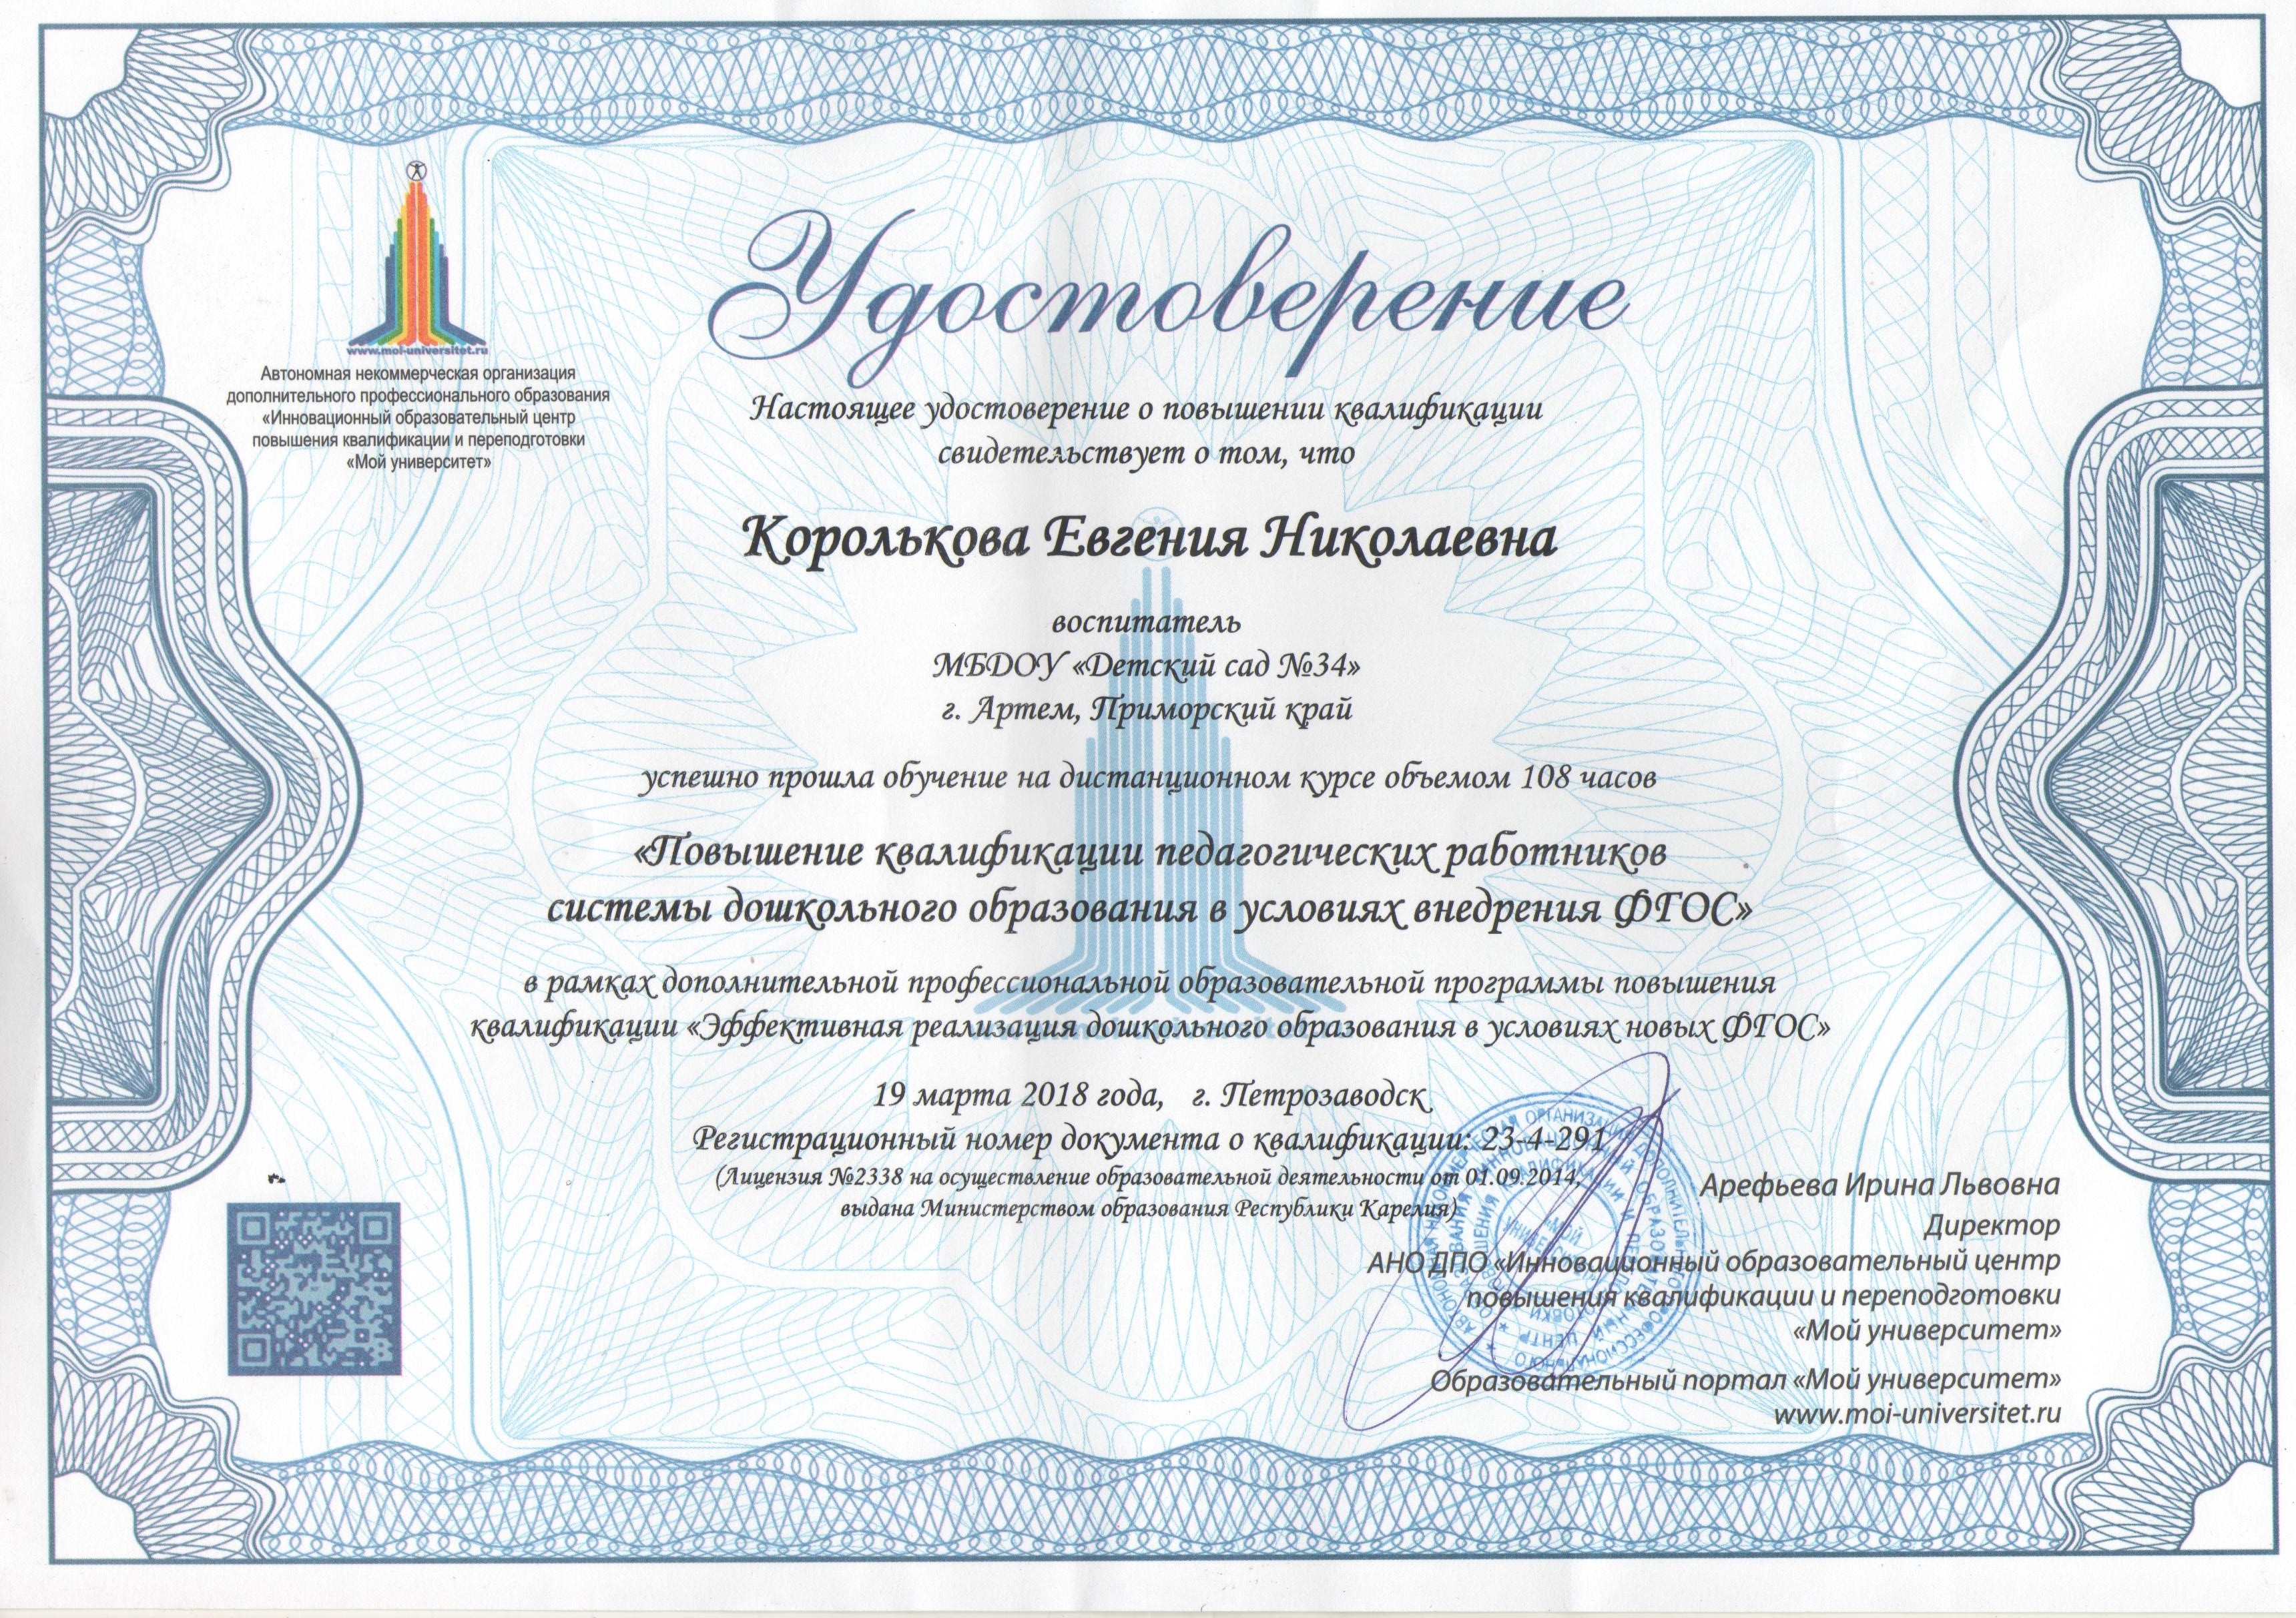 Повышение квалификации дистанционно naridpo ru. Повышение квалификации воспитателя. Сертификат компетенций. Сертификат по повышению квалификации.